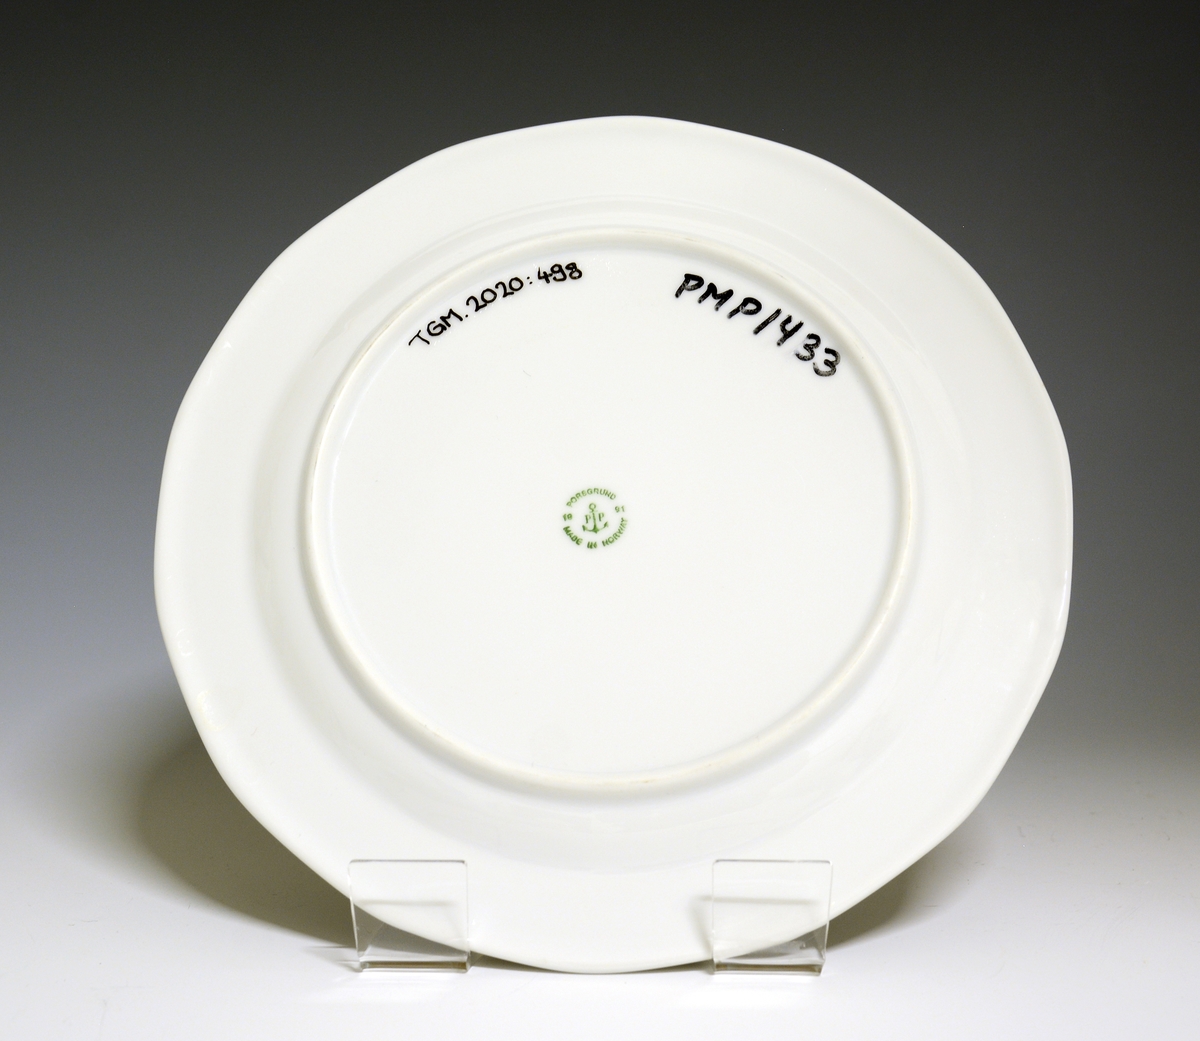 Mangekantet tallerken av porselen med hvit glasur. Dekorert med en bord ytterst på fanen med blomster og geometriske former. 
Modell: Octavia, i produksjon fra 1977
Dekor: Innkjøpt dekor, ikke av Grete Rønning.